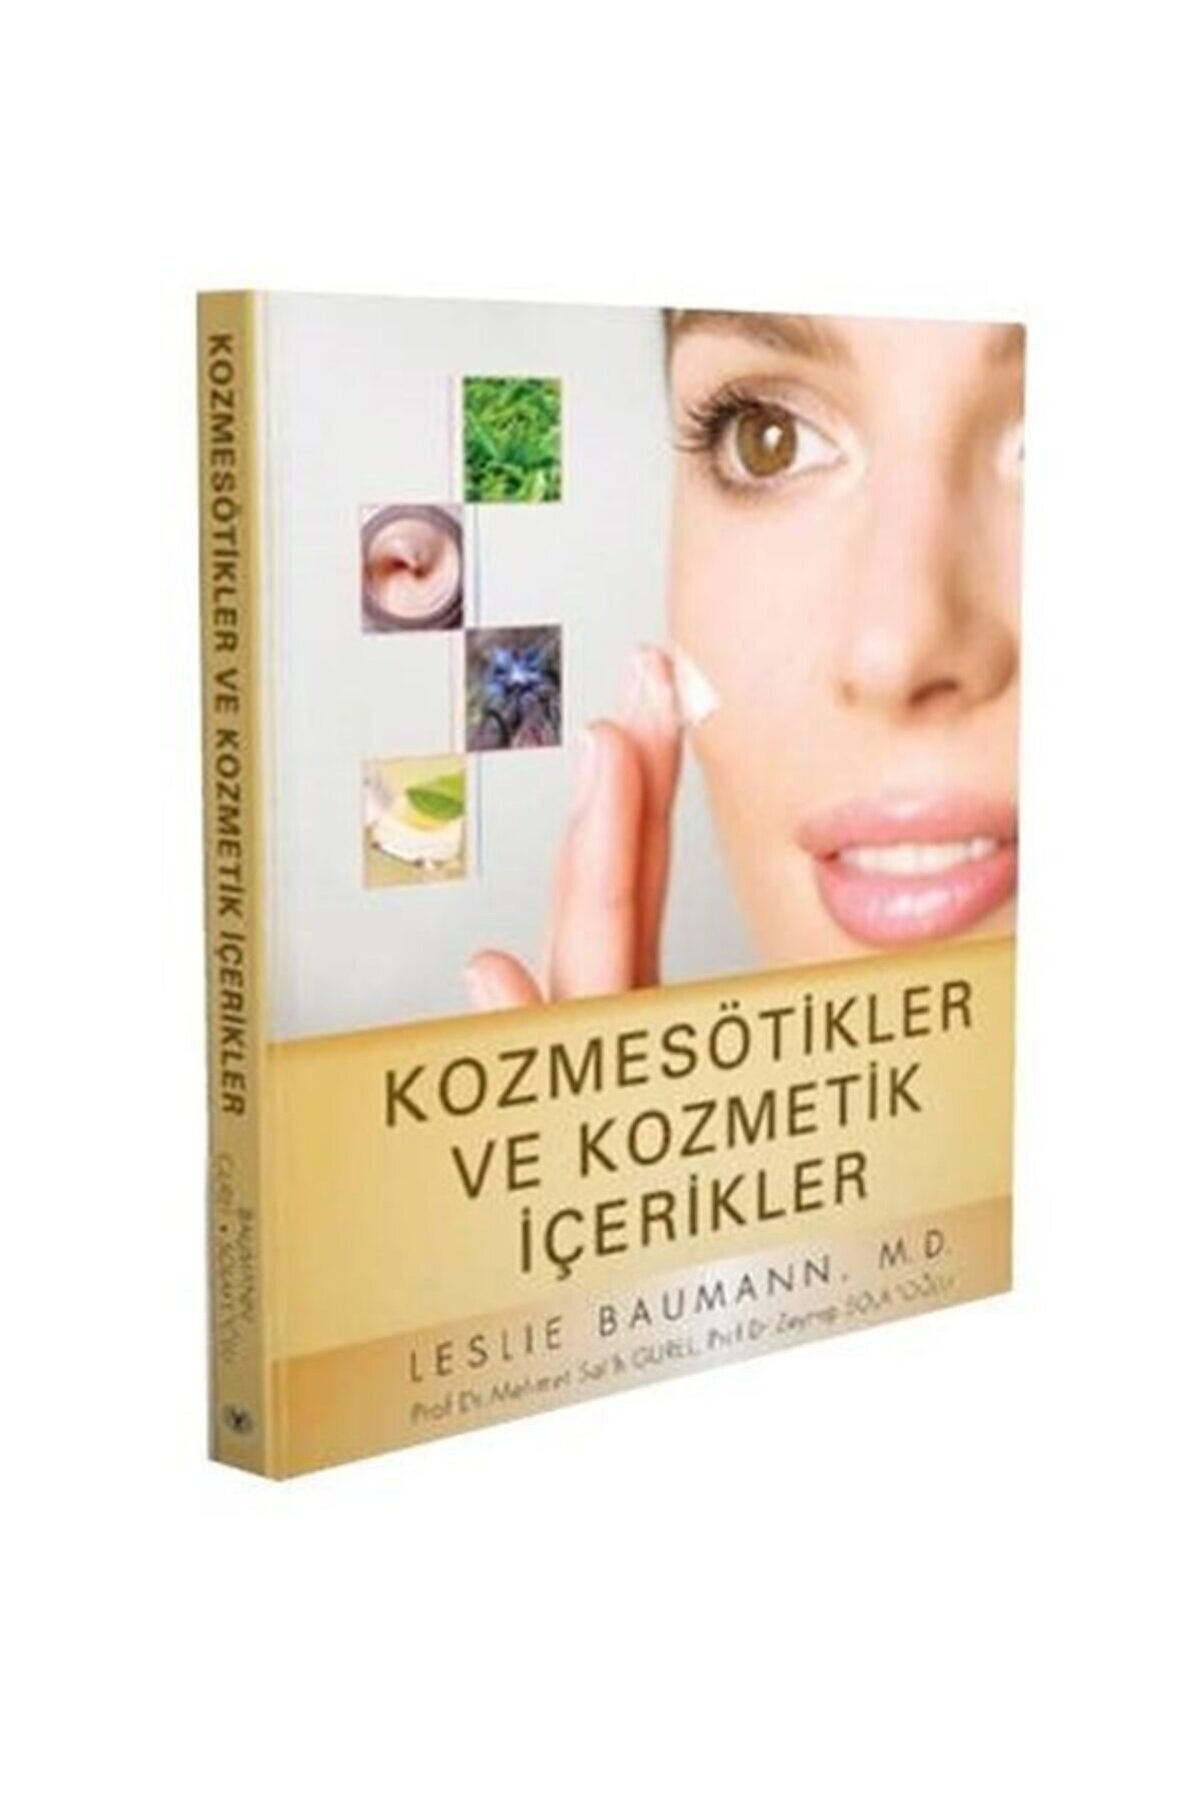 İstanbul Medikal Yayıncılık Kozmesötikler Ve Kozmetik Içerikler-istanbul Medikal Yayıncı